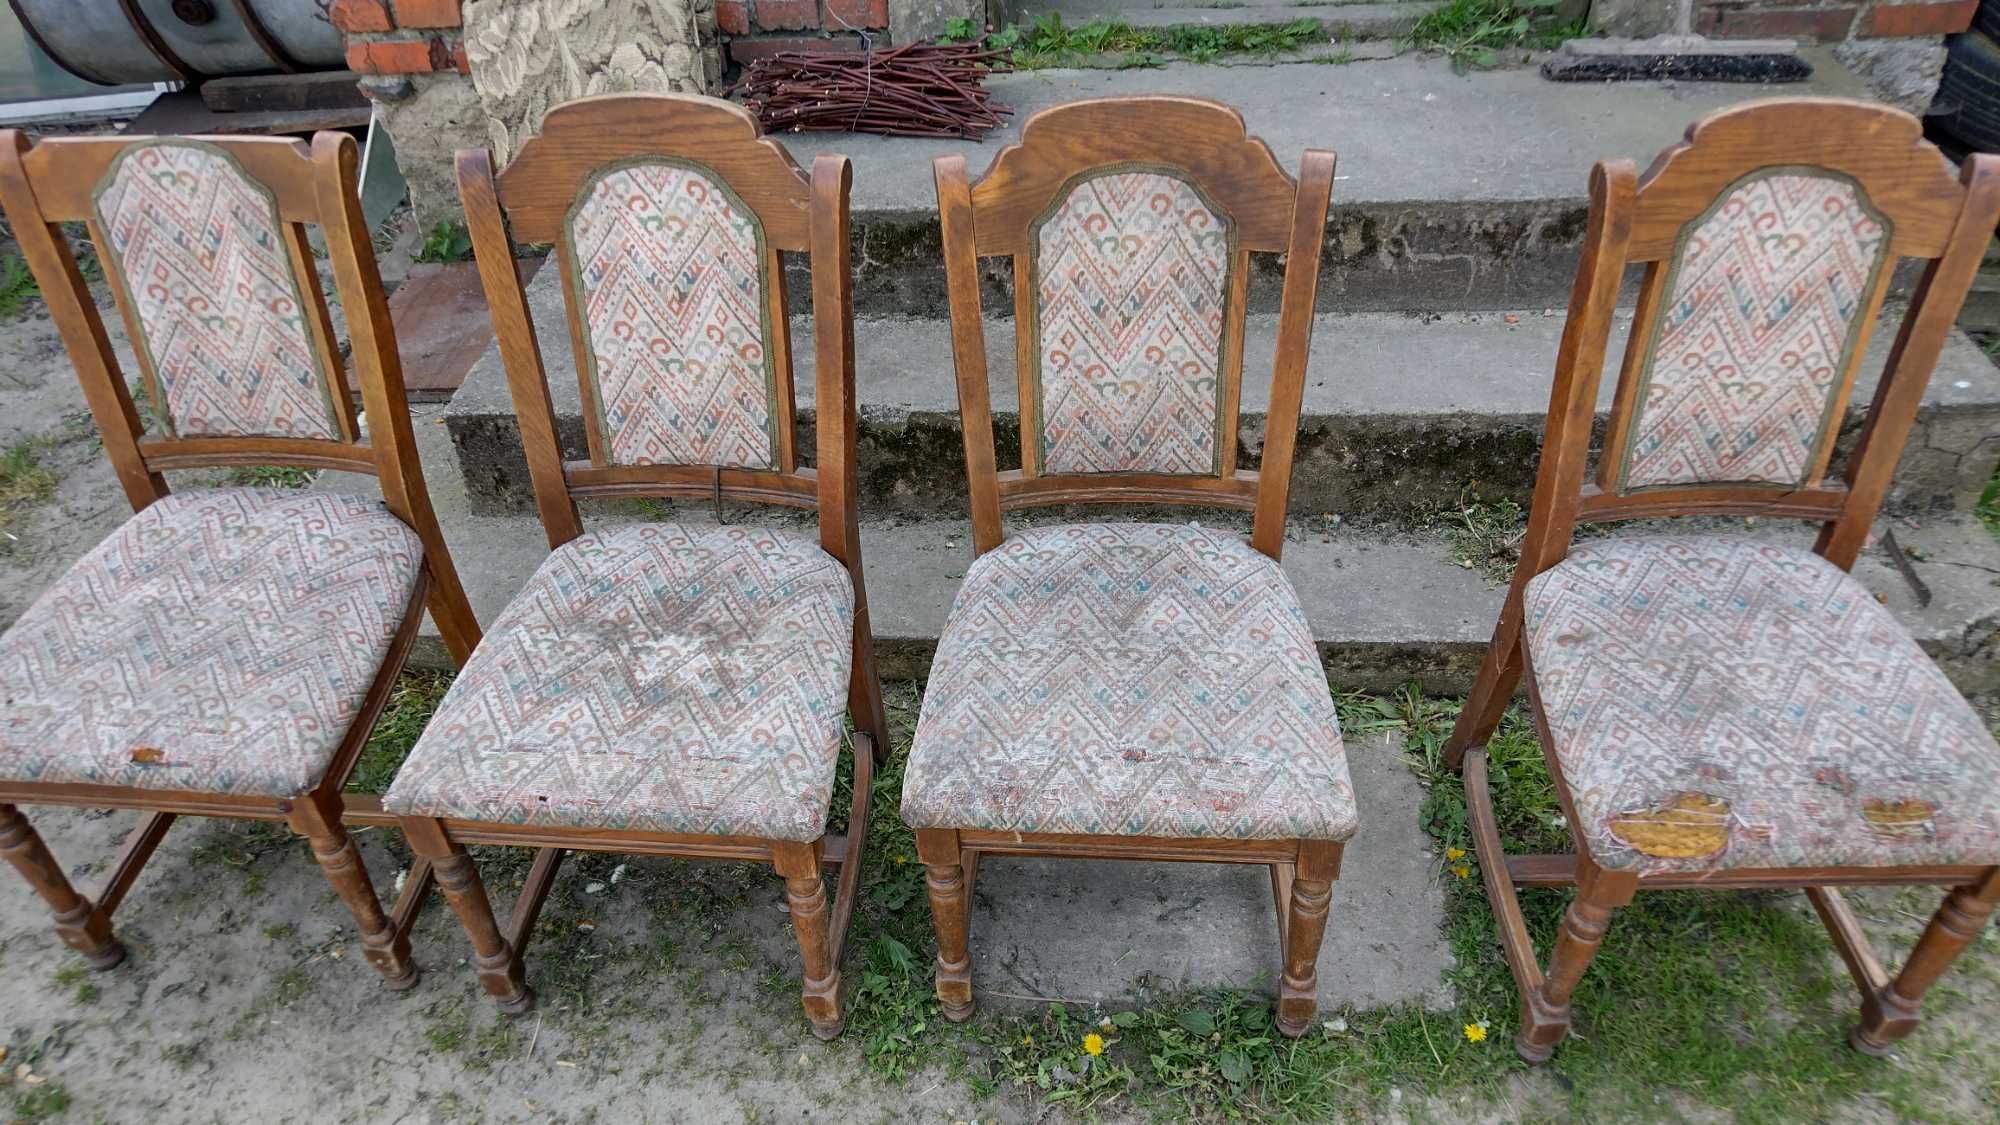 4 krzesła drewniane